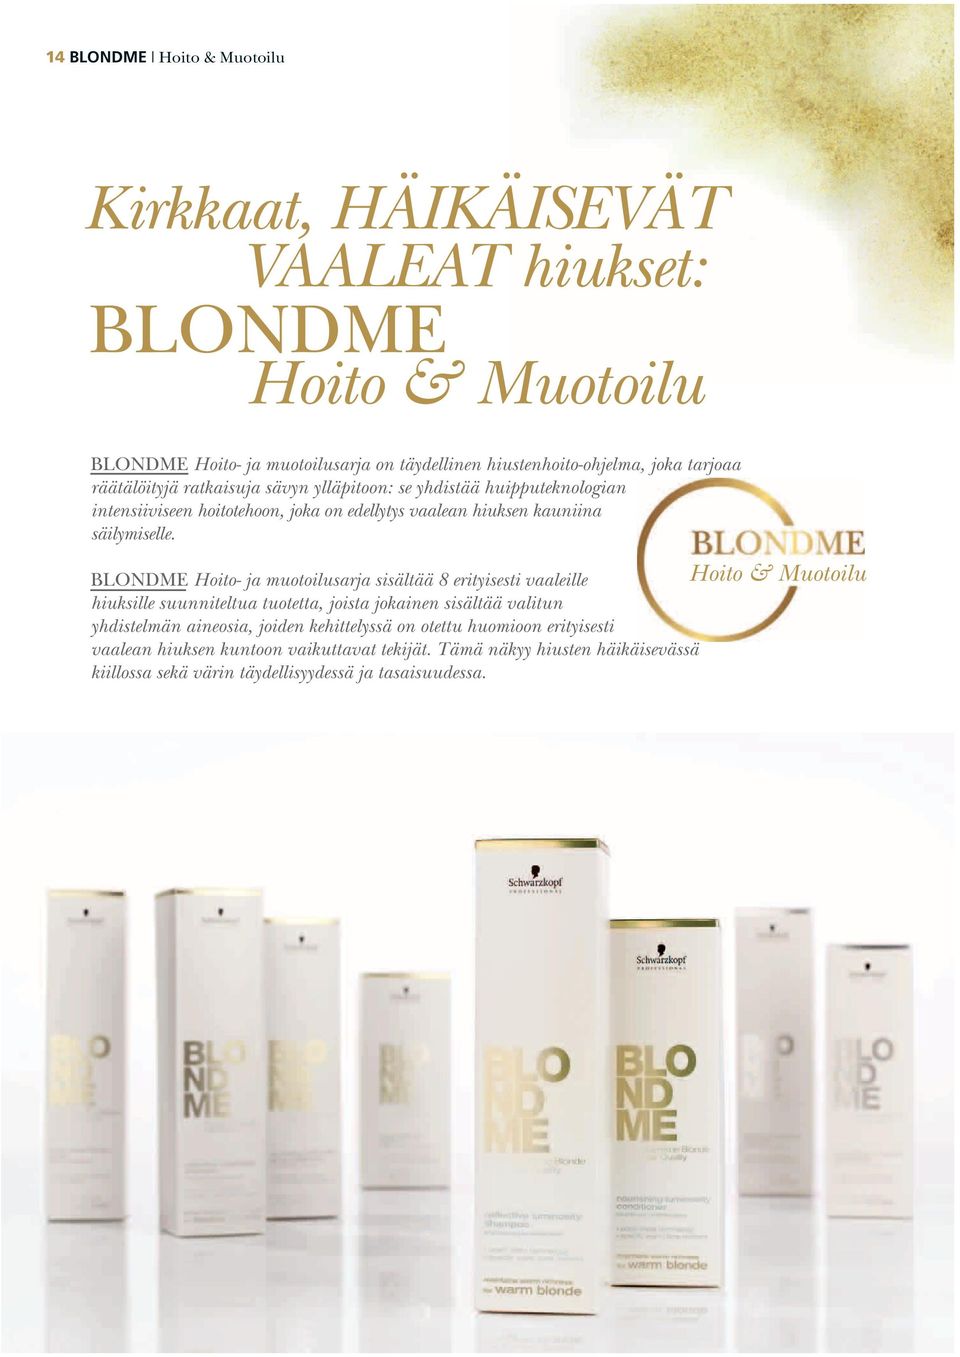 BLONDME Hoito- ja muotoilusarja sisältää 8 erityisesti vaaleille hiuksille suunniteltua tuotetta, joista jokainen sisältää valitun yhdistelmän aineosia, joiden